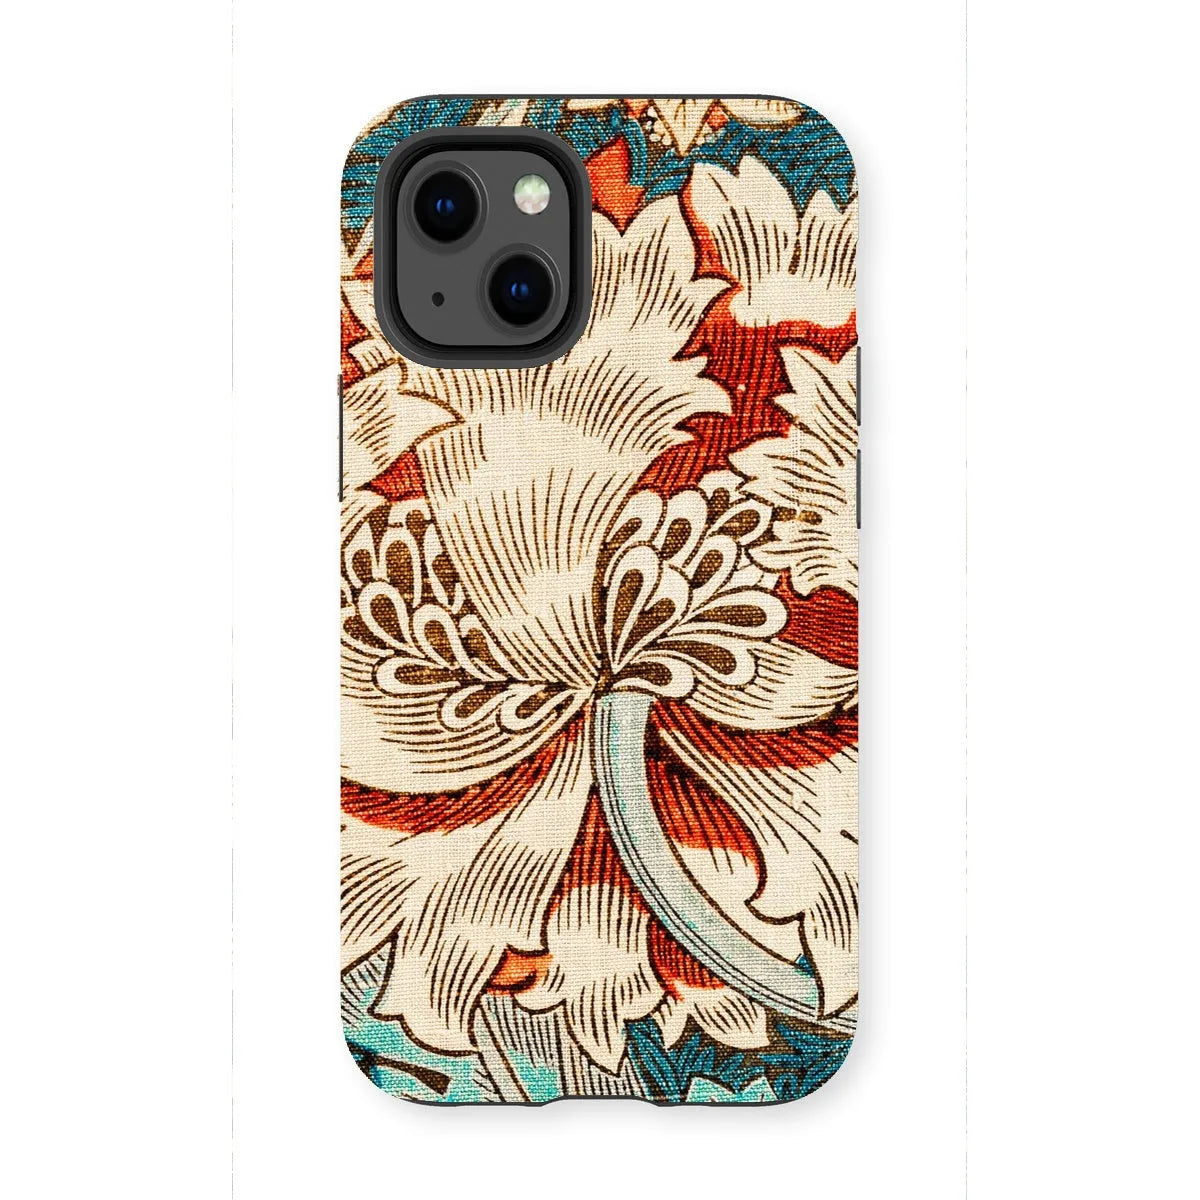 Honeysuckle Too By William Morris Phone Case - Iphone 13 Mini / Matte - Mobile Phone Cases - Aesthetic Art